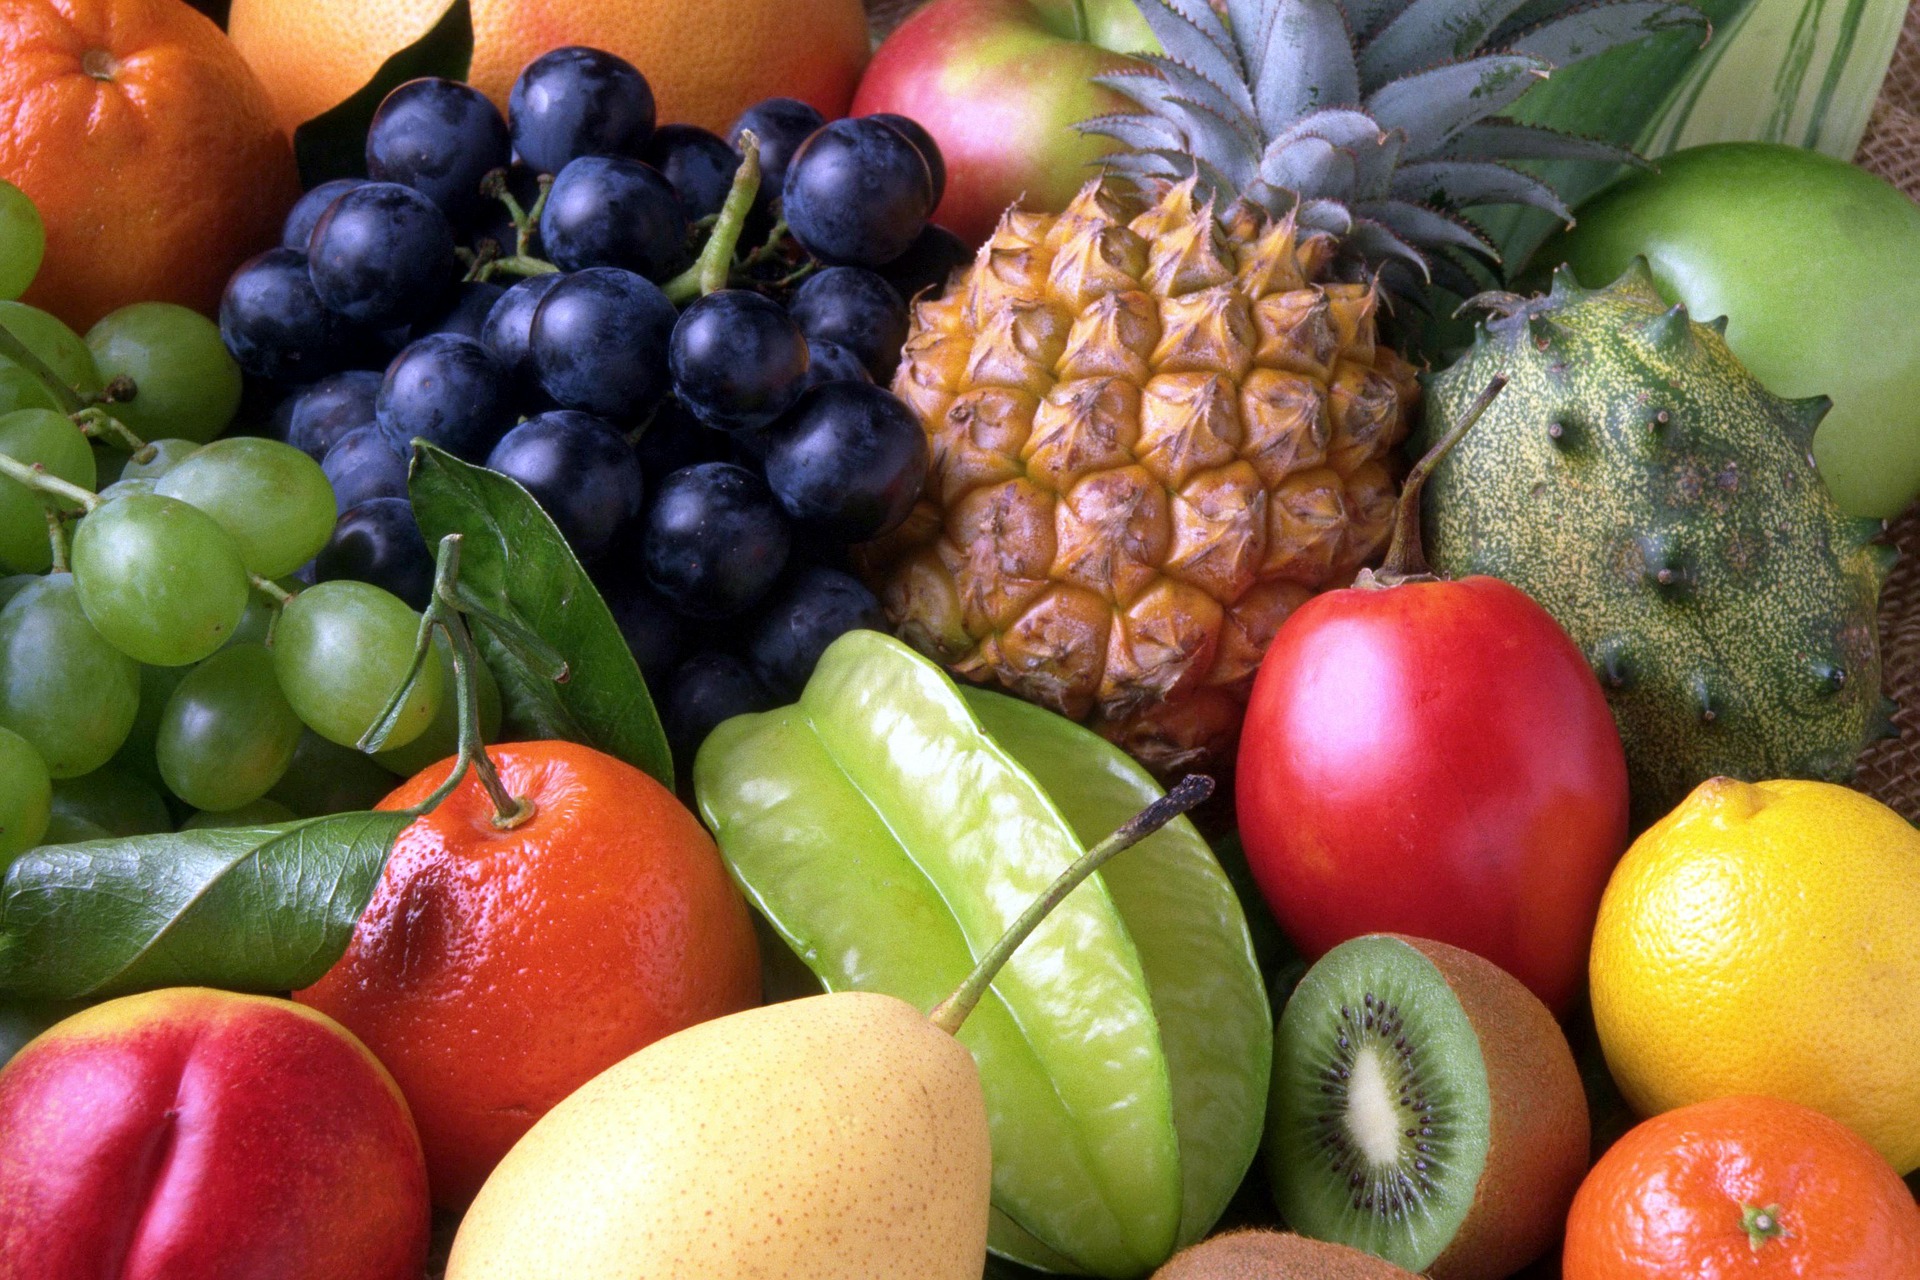 Eating Fruit May Improve Fertility